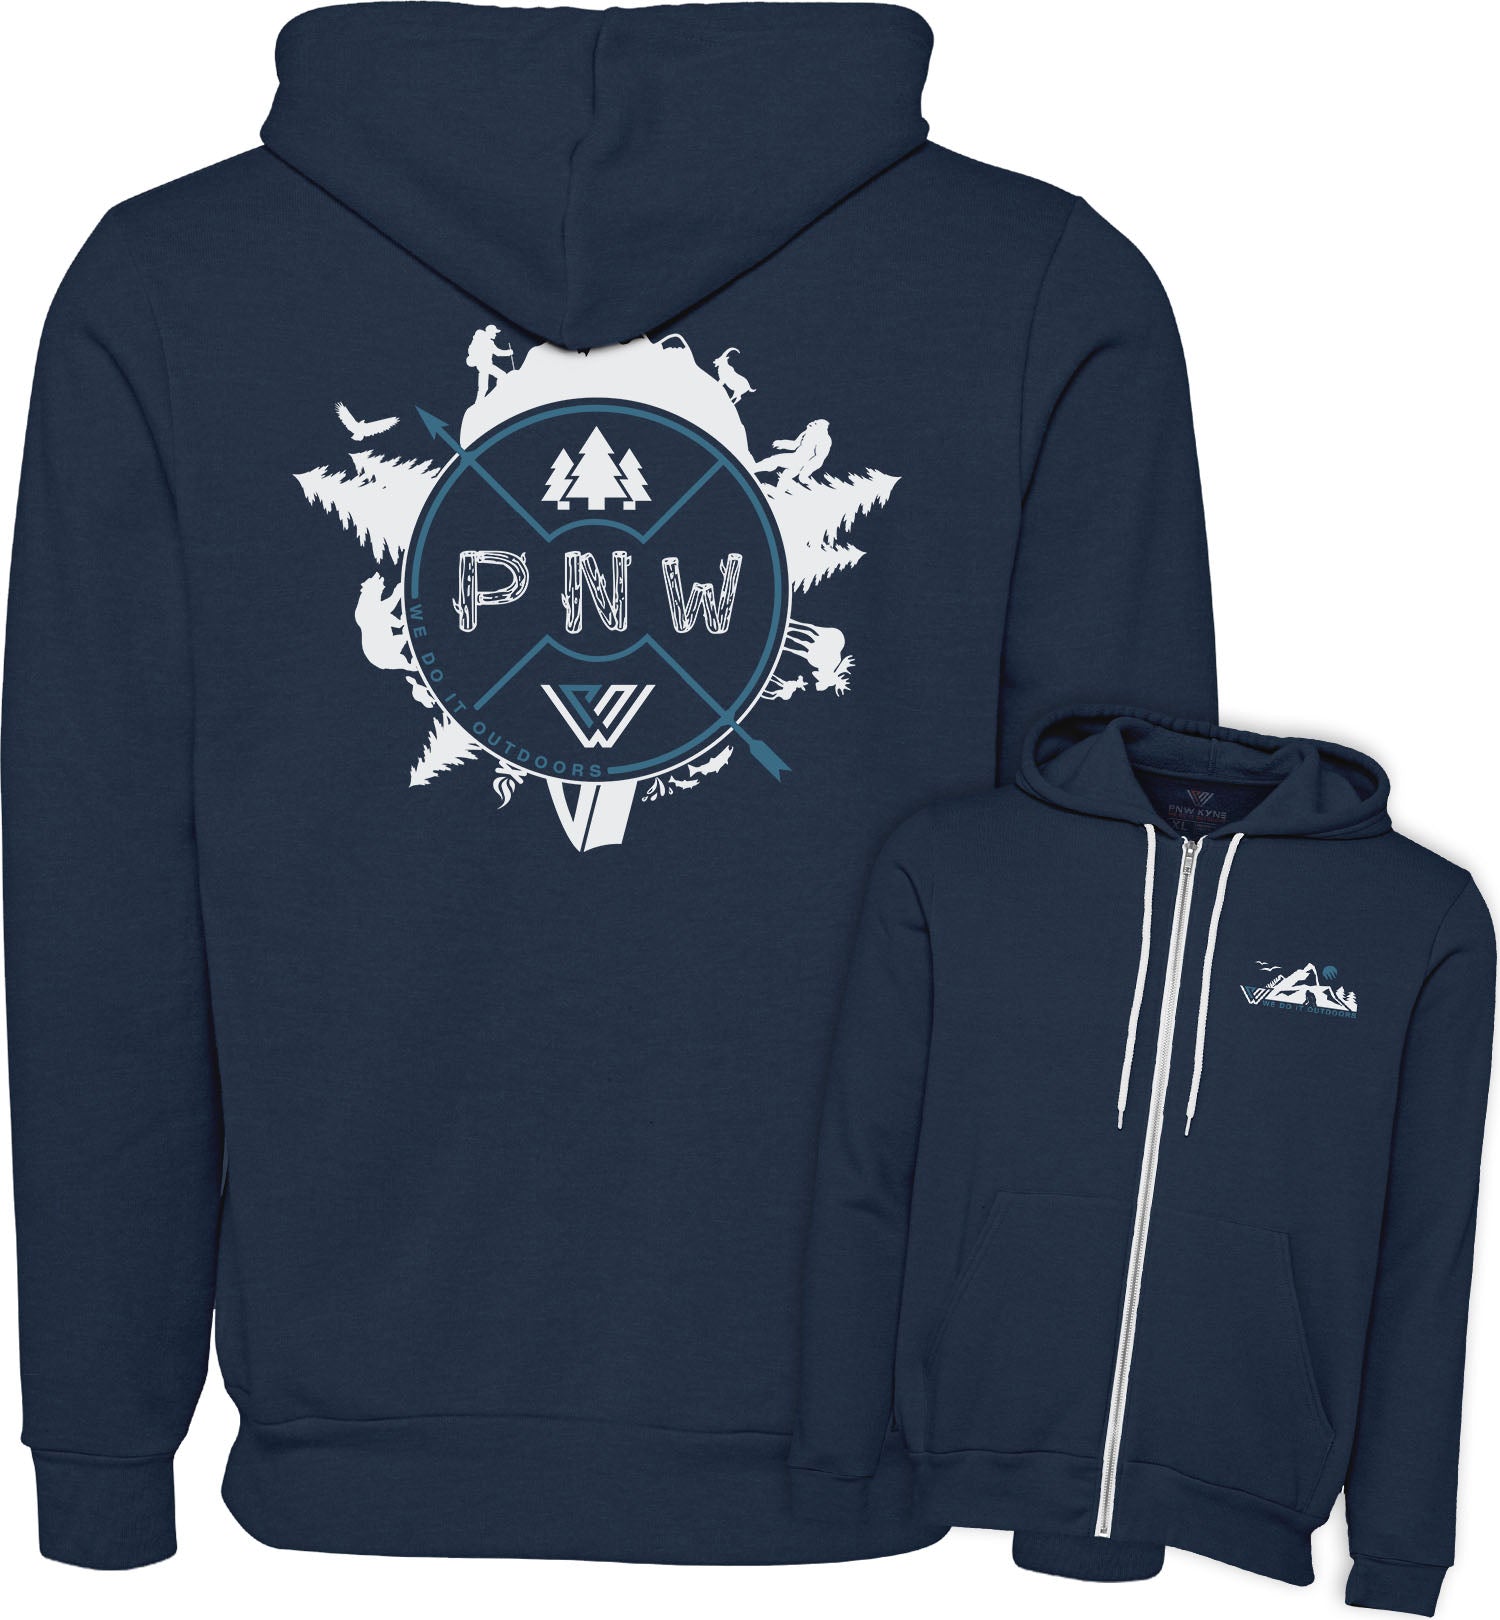 PNW Sweatshirt - Around the PNW - Zip Hoodie - Combined - Black Cherokee